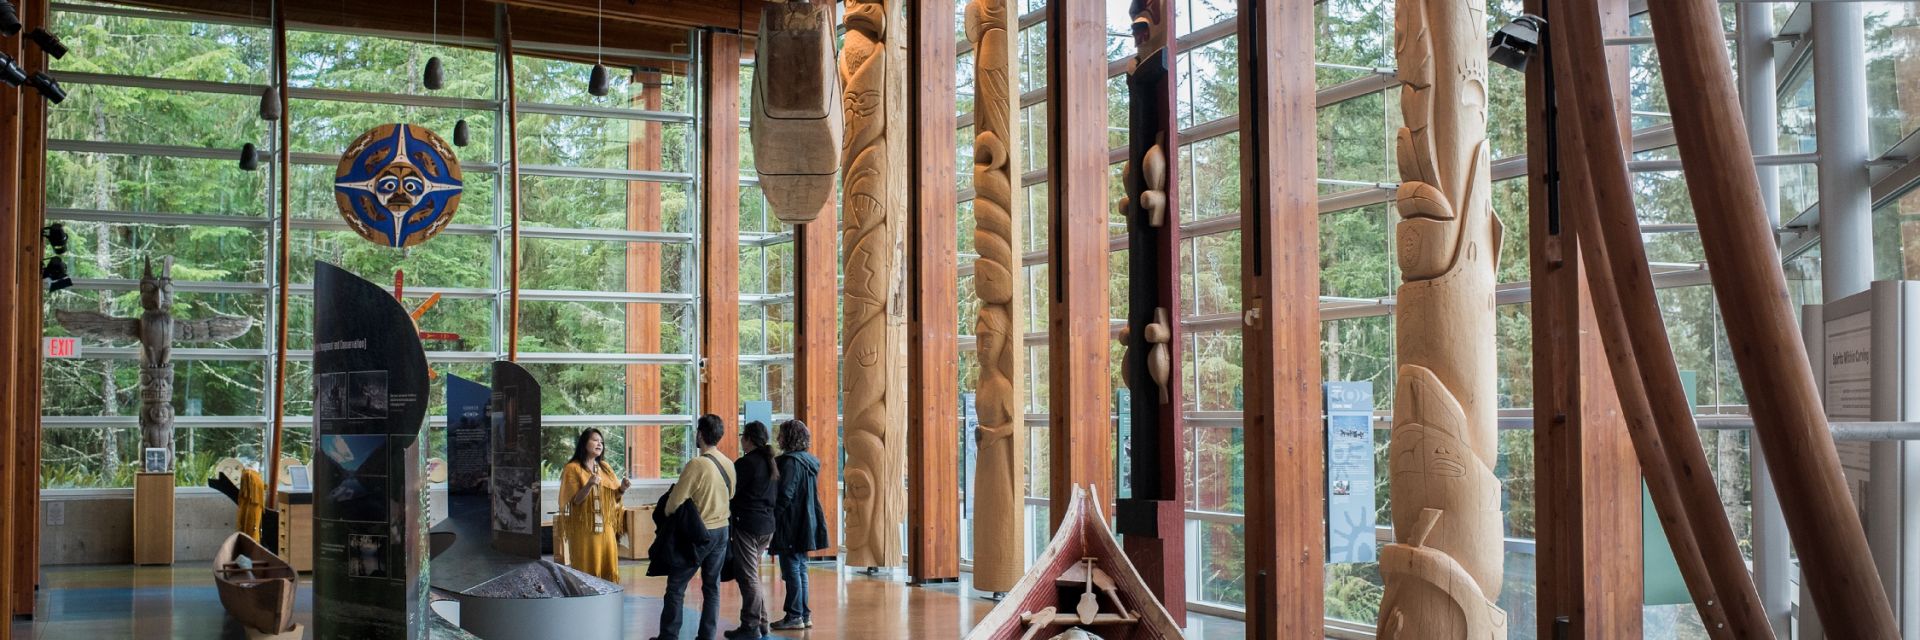 Squamish Lilloette Cultural center, whistler, british columbia, canada